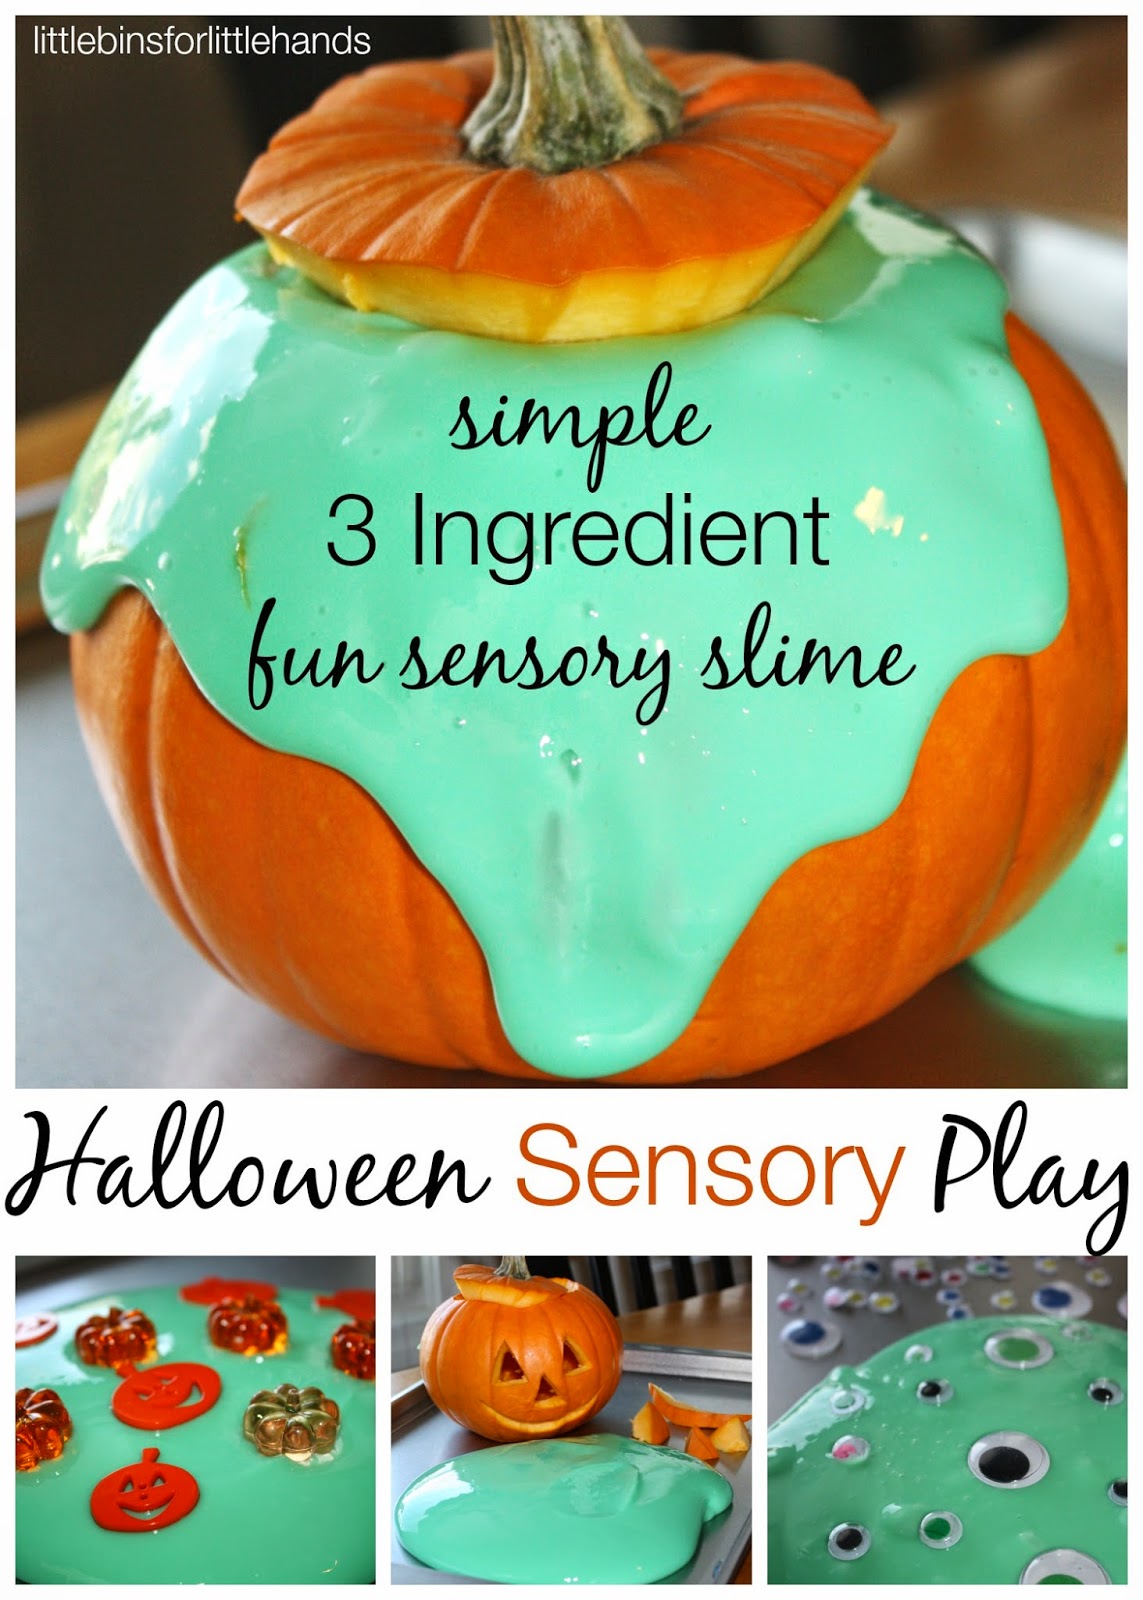 http://littlebinsforlittlehands.com/quick-easy-slime-halloween-sensory-play/